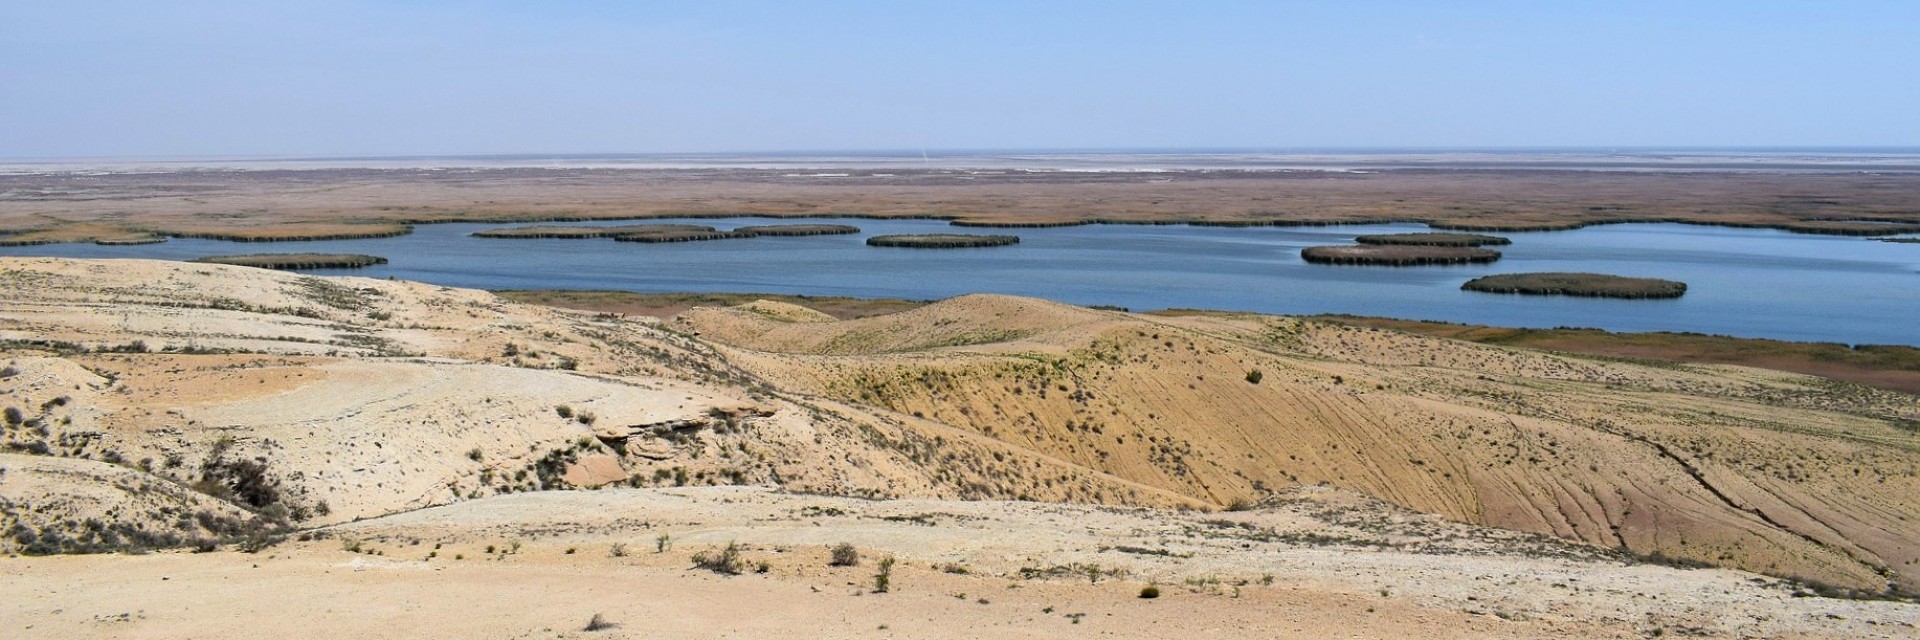 Uzbek Aral